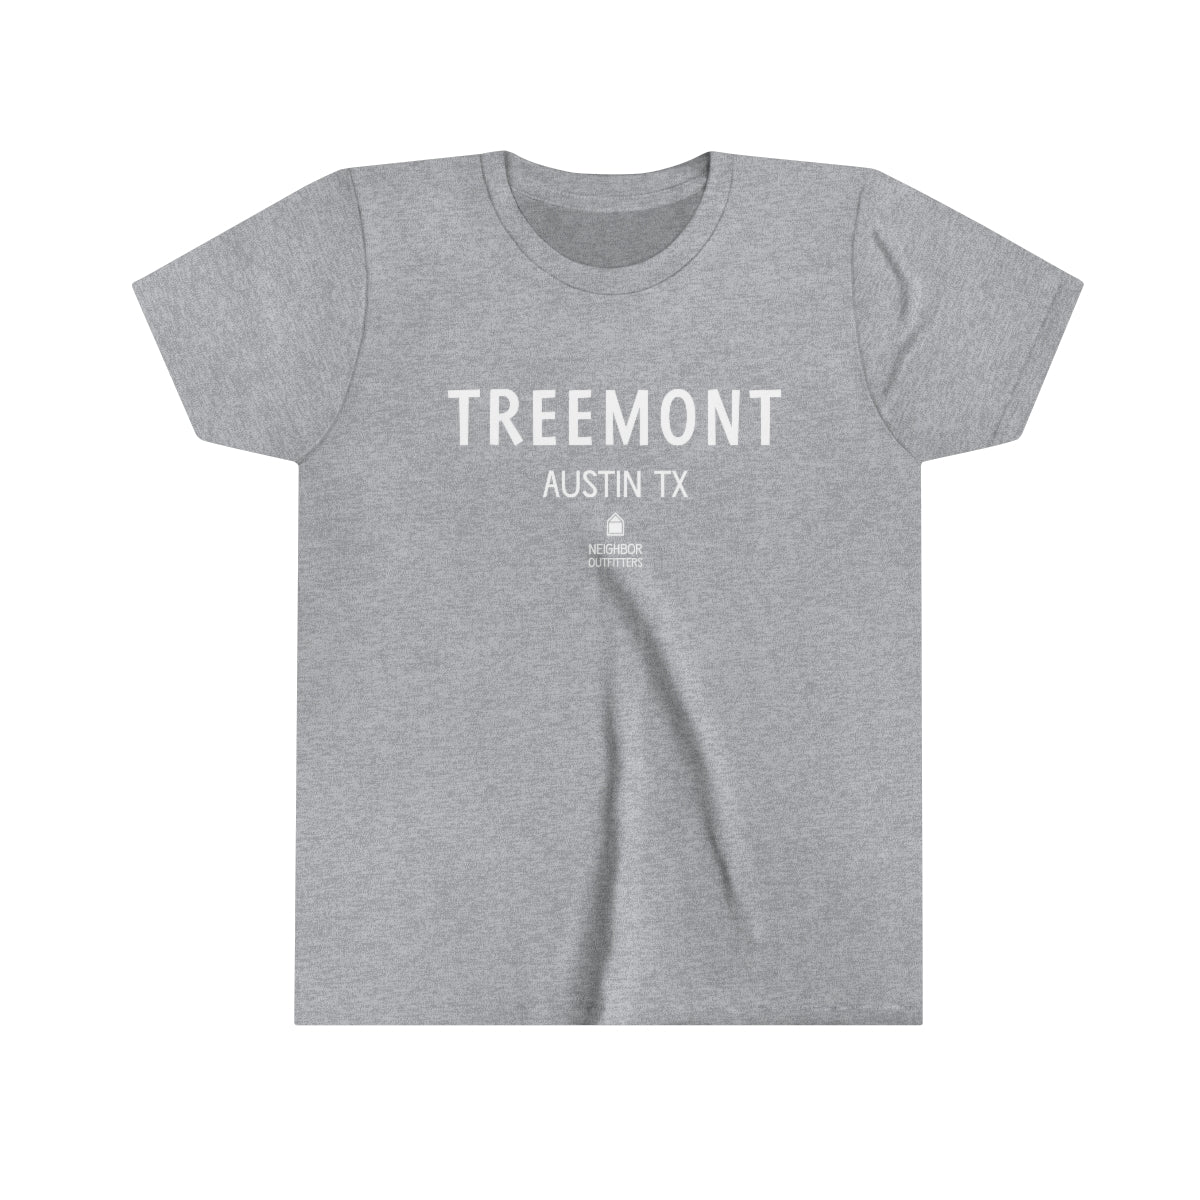 Kids Treemont T-shirt: "Playground"